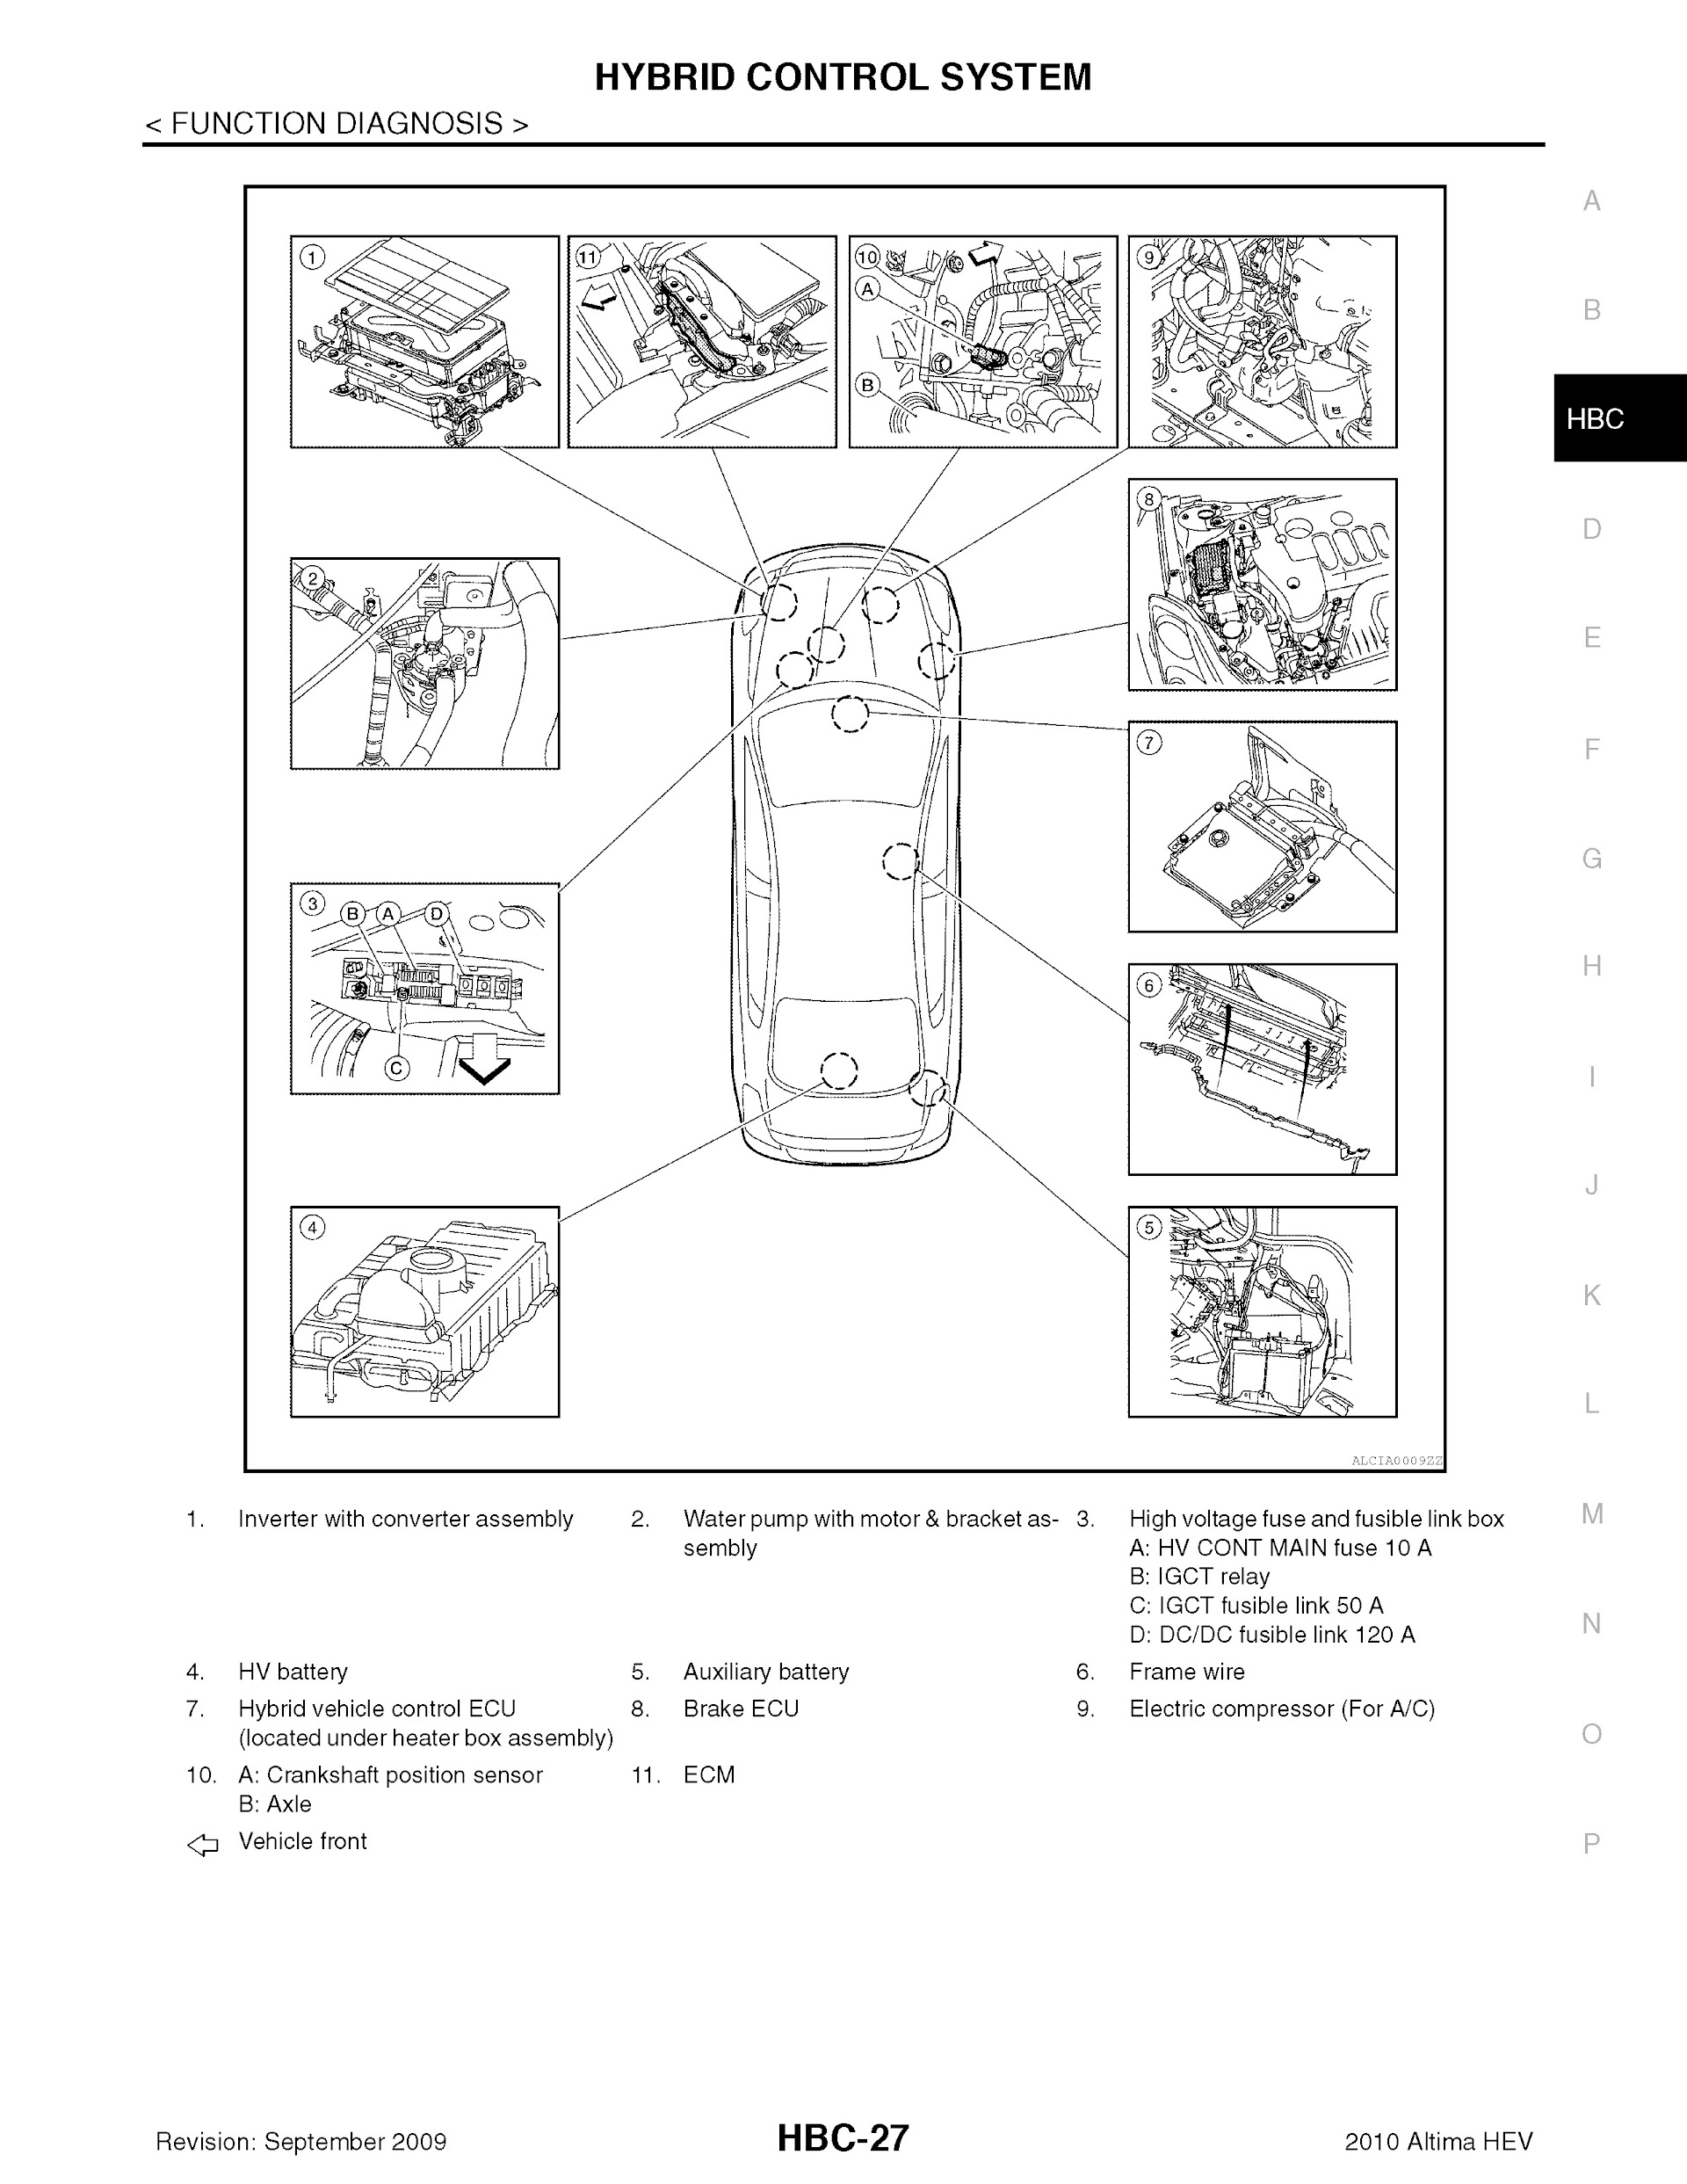 Download 2010 Nissan Altima Hybrid Repair Manual.